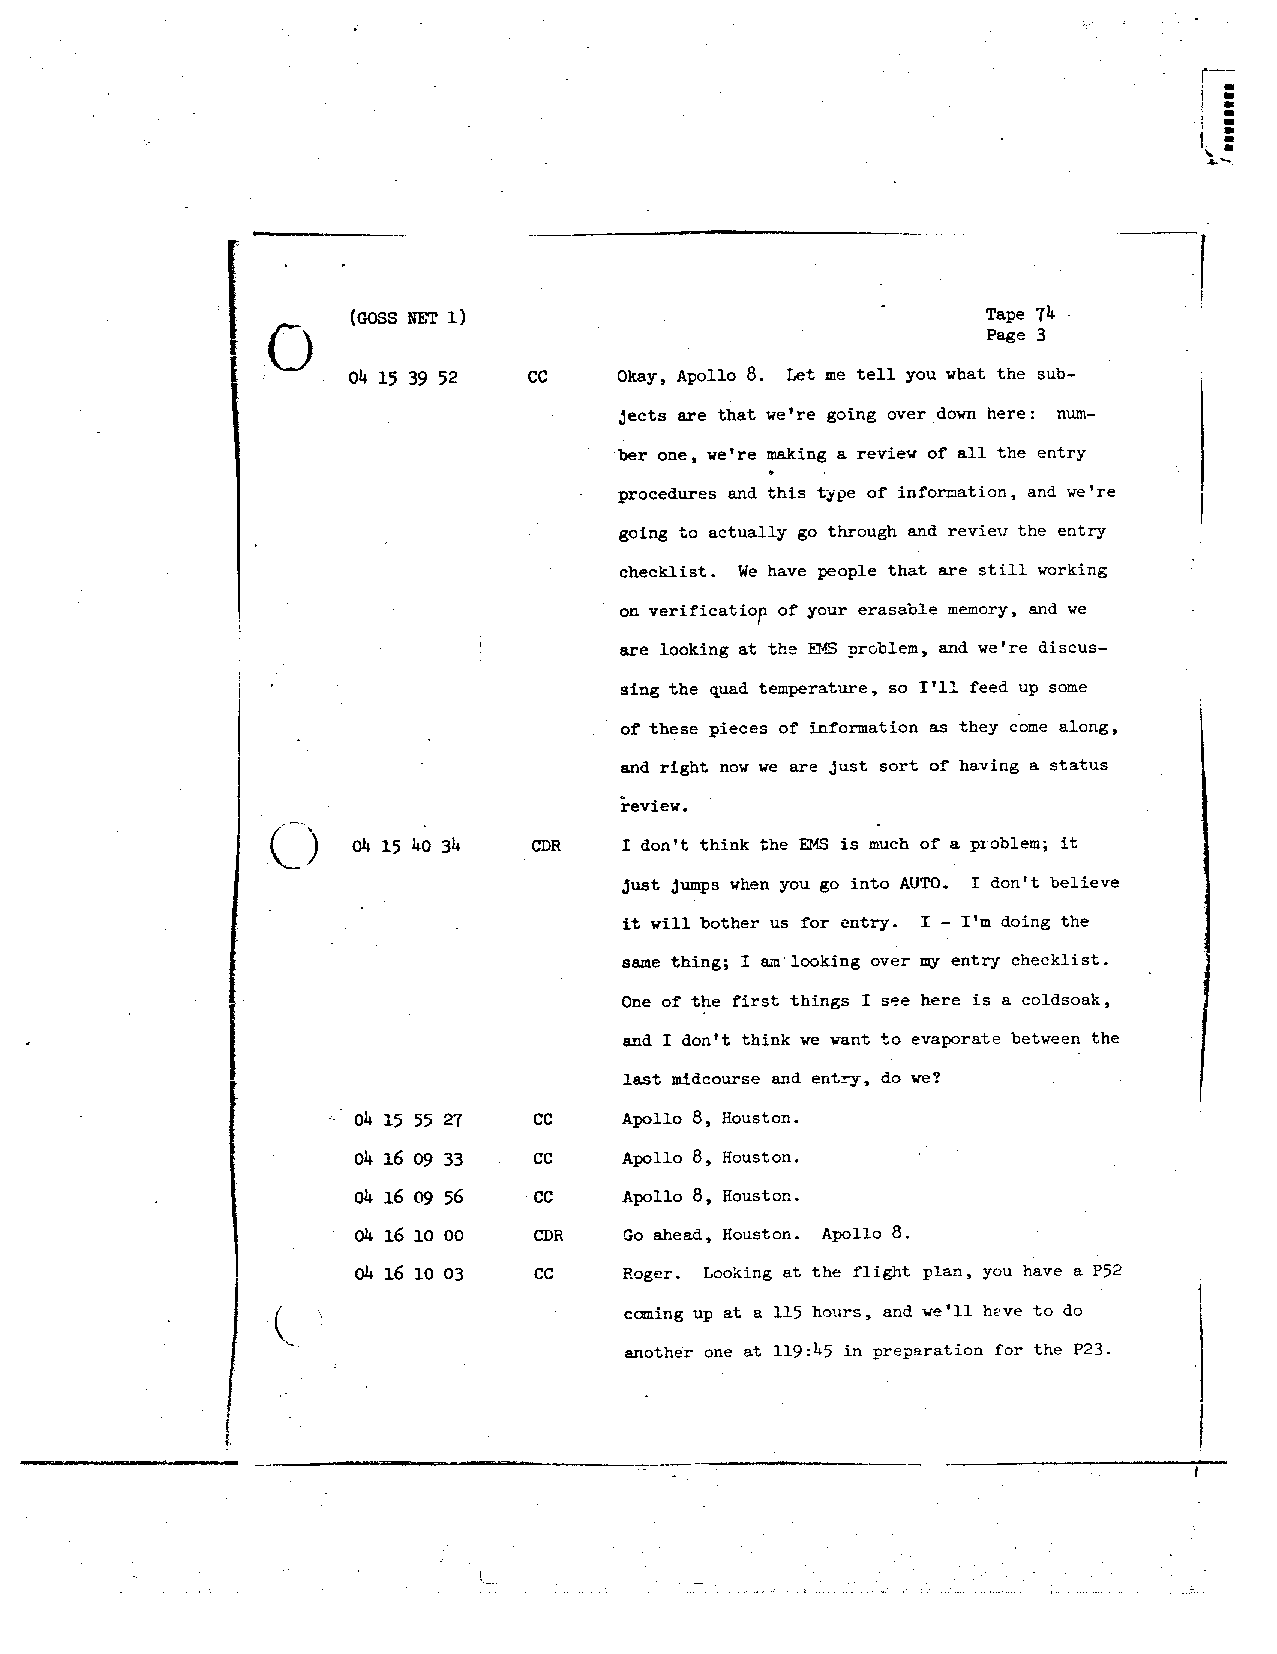 Page 598 of Apollo 8’s original transcript